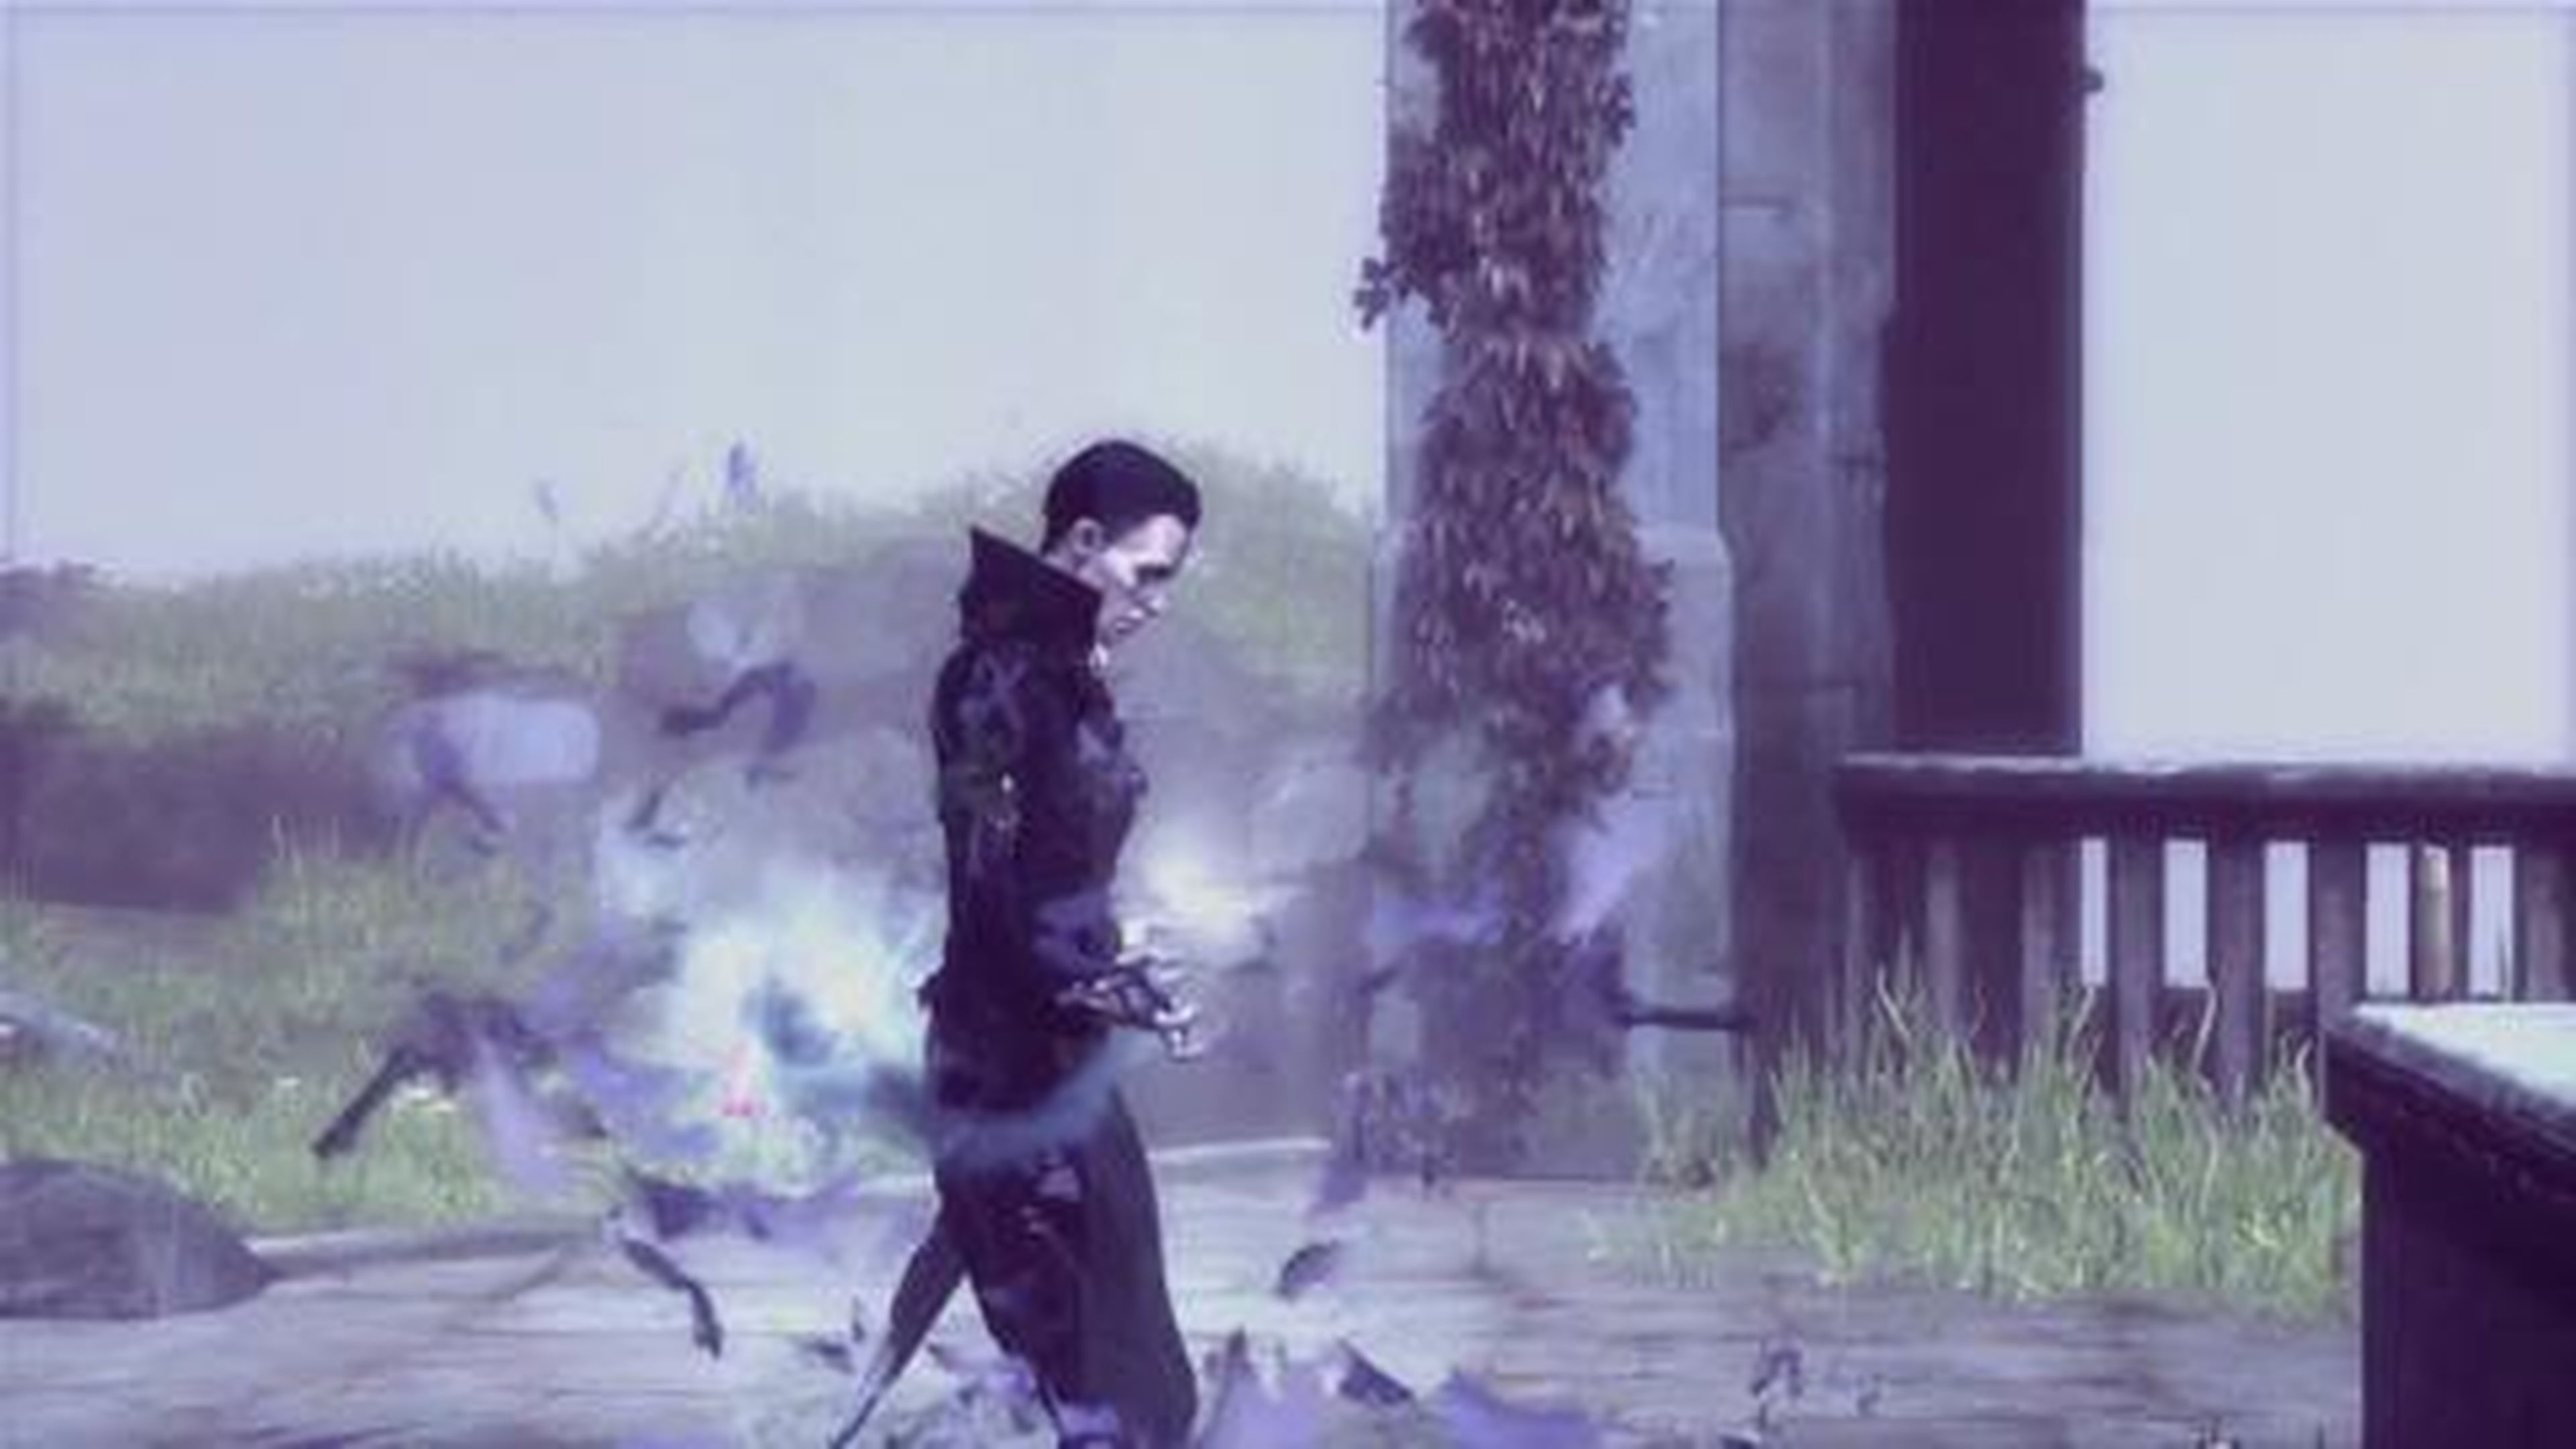 Tráiler de lanzamiento de Las brujas de Brigmore, el tercer DLC de Dishonored, en HobbyConsolas.com